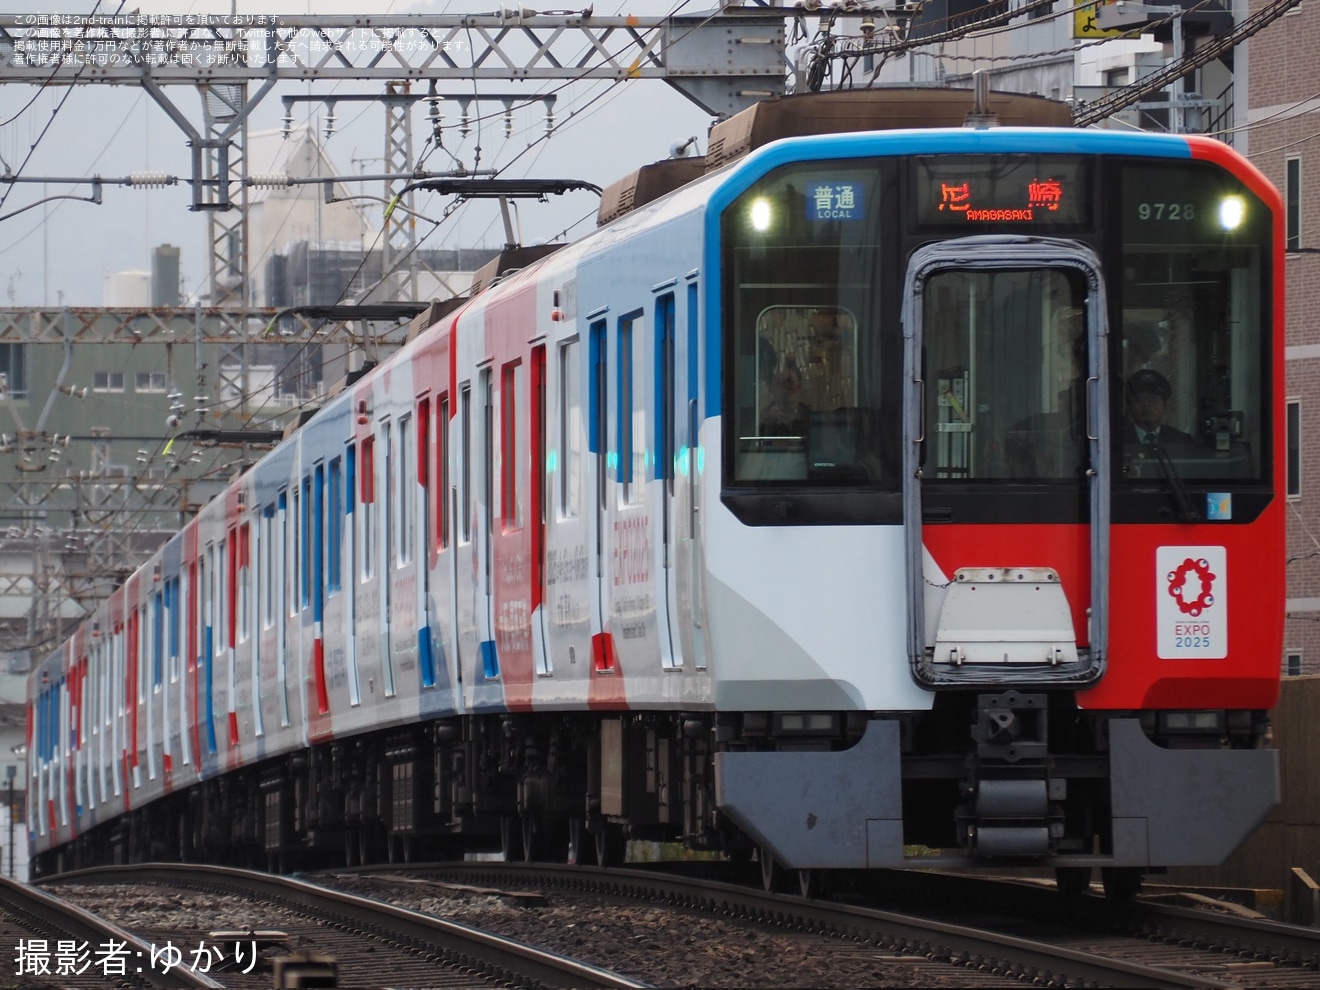 【近鉄】9820系EH28へ大阪・関西万博ラッピングが取り付けられ運用を開始の拡大写真